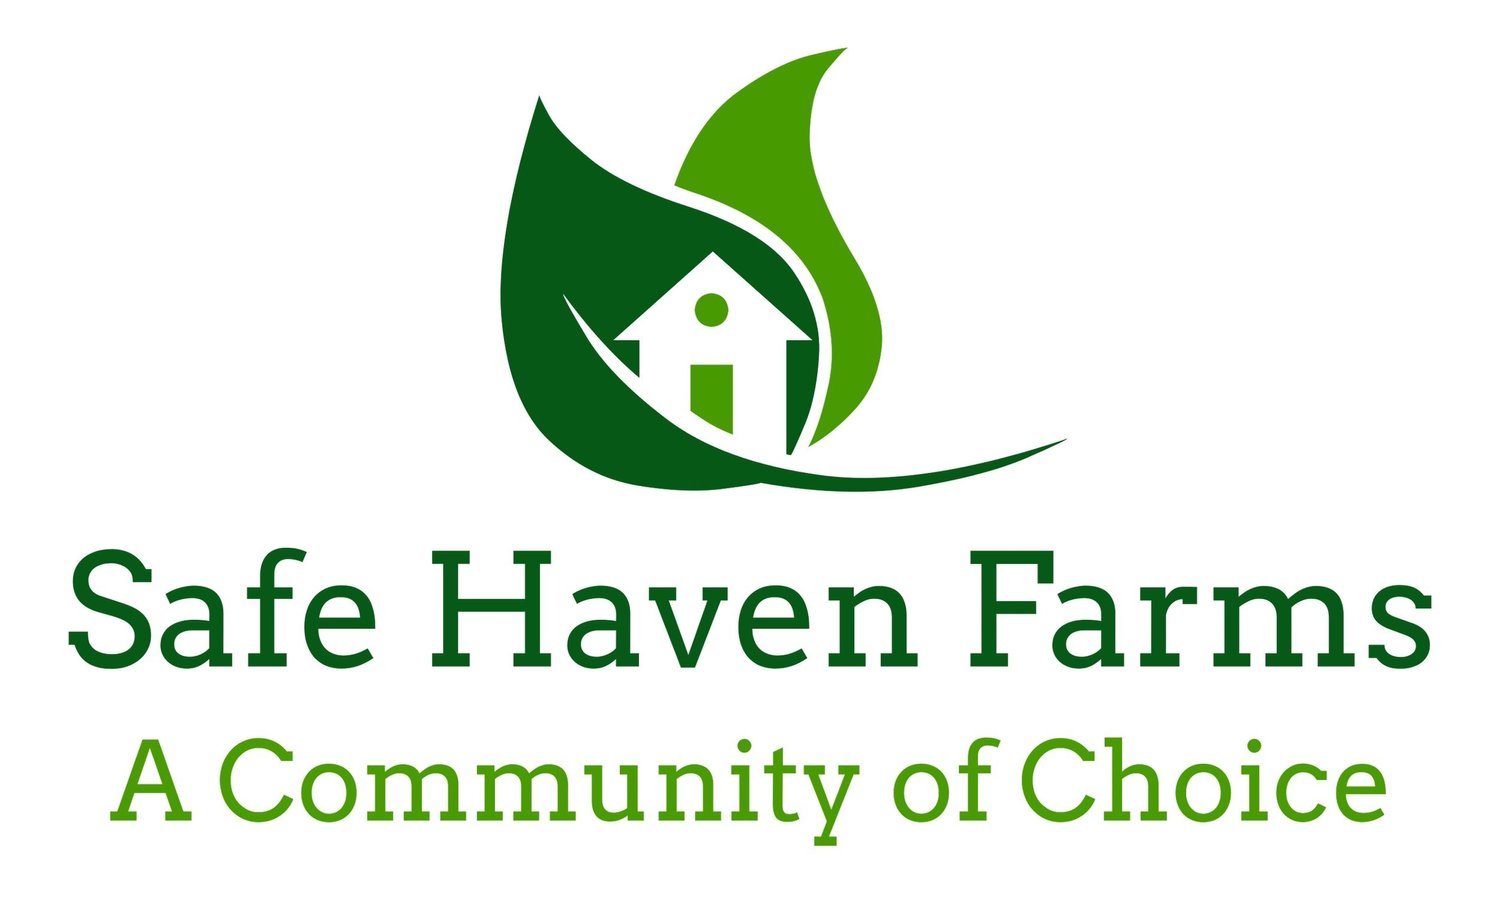 Safe Haven Farms